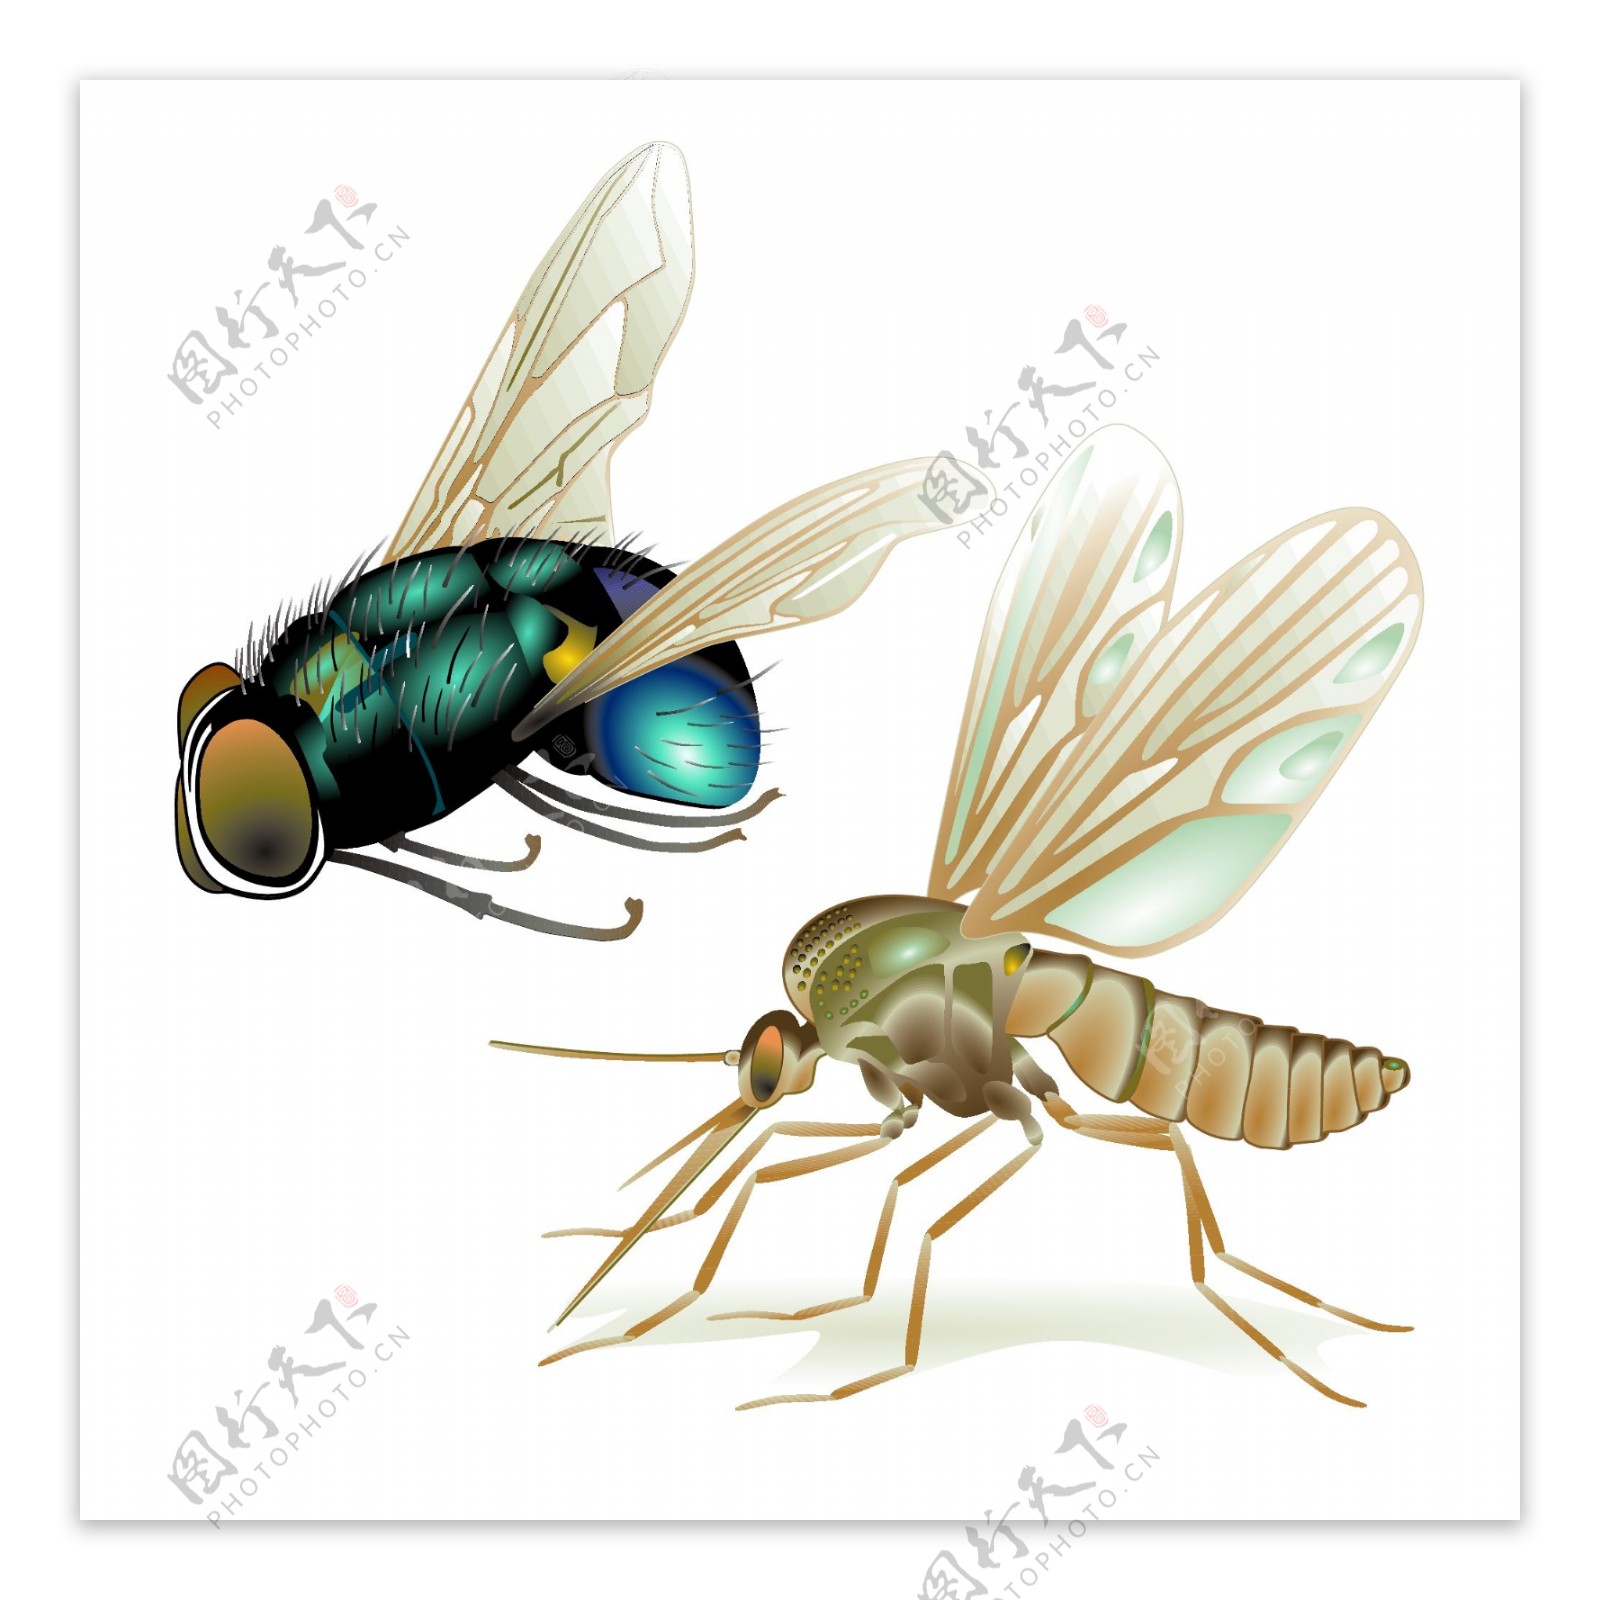 苍蝇和蚊子的写实矢量素材